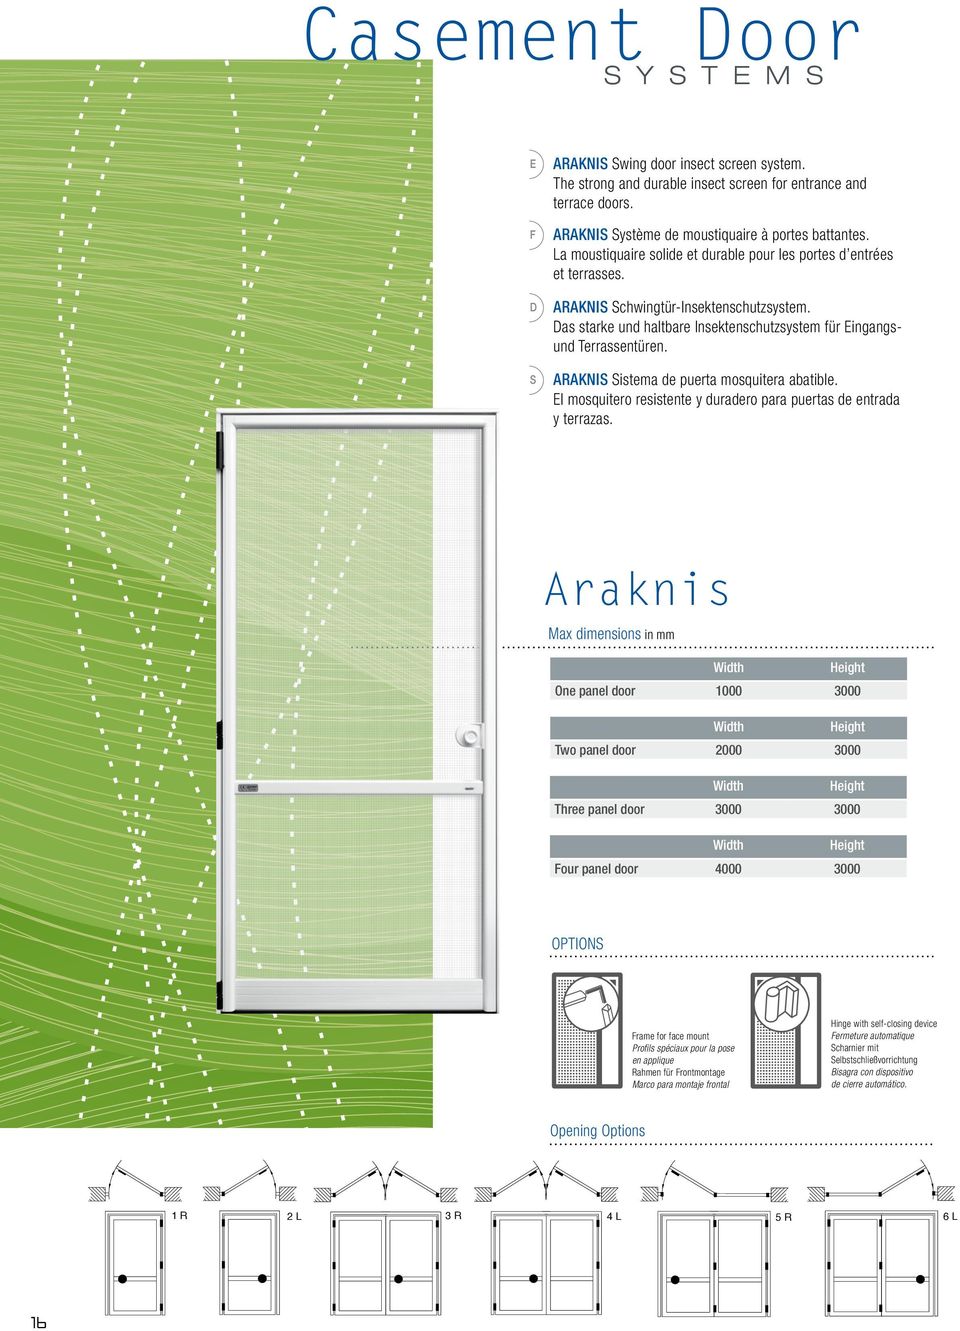 ARAKNIS Sistema de puerta mosquitera abatible. El mosquitero resistente y duradero para puertas de entrada y terrazas.